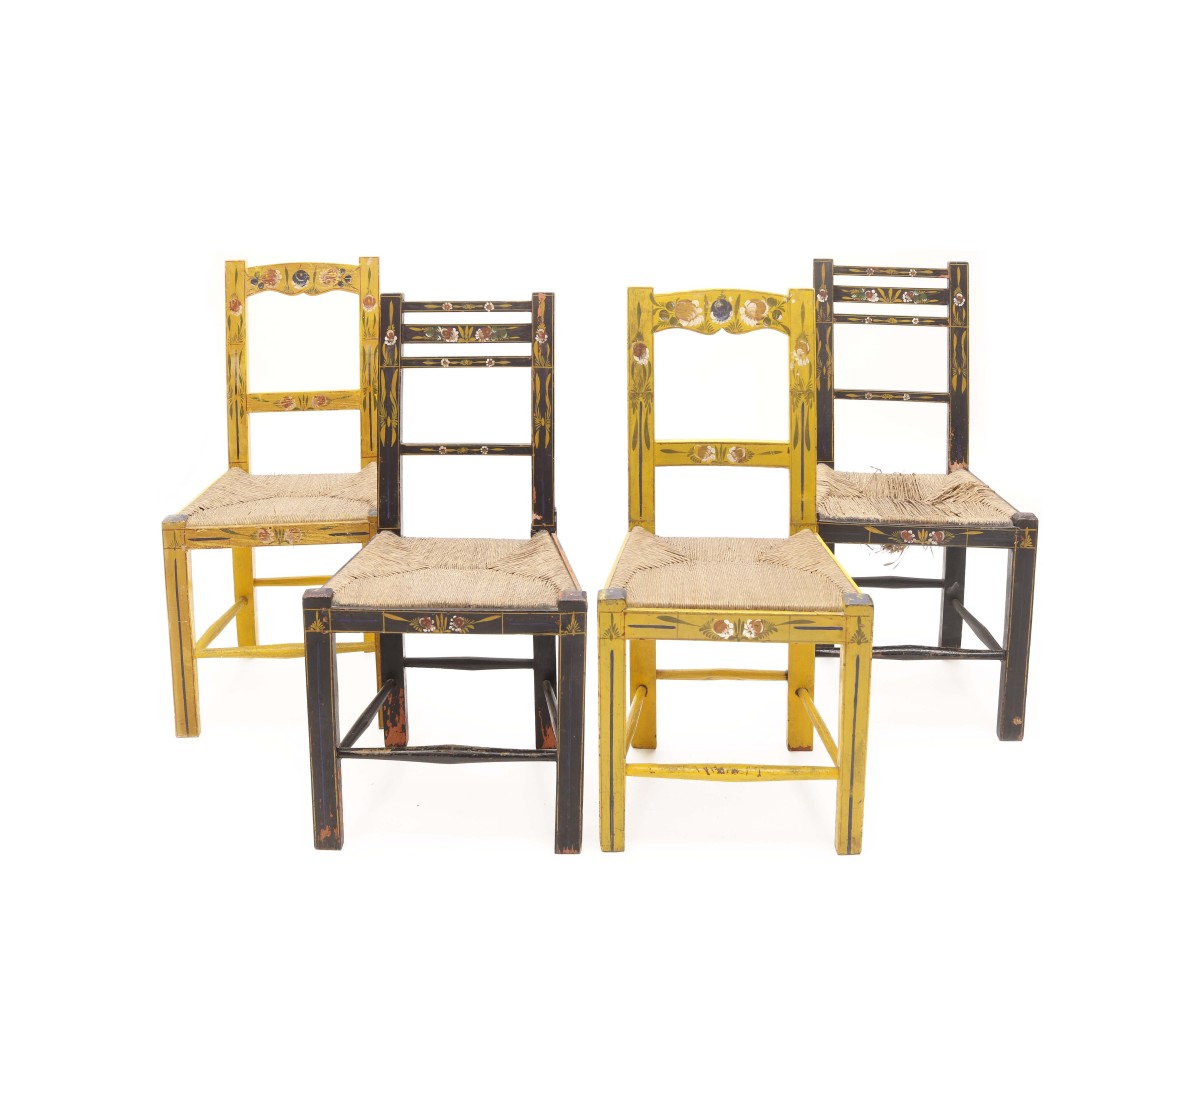 Dois pares de cadeiras alentejanas em madeira pintada (4)